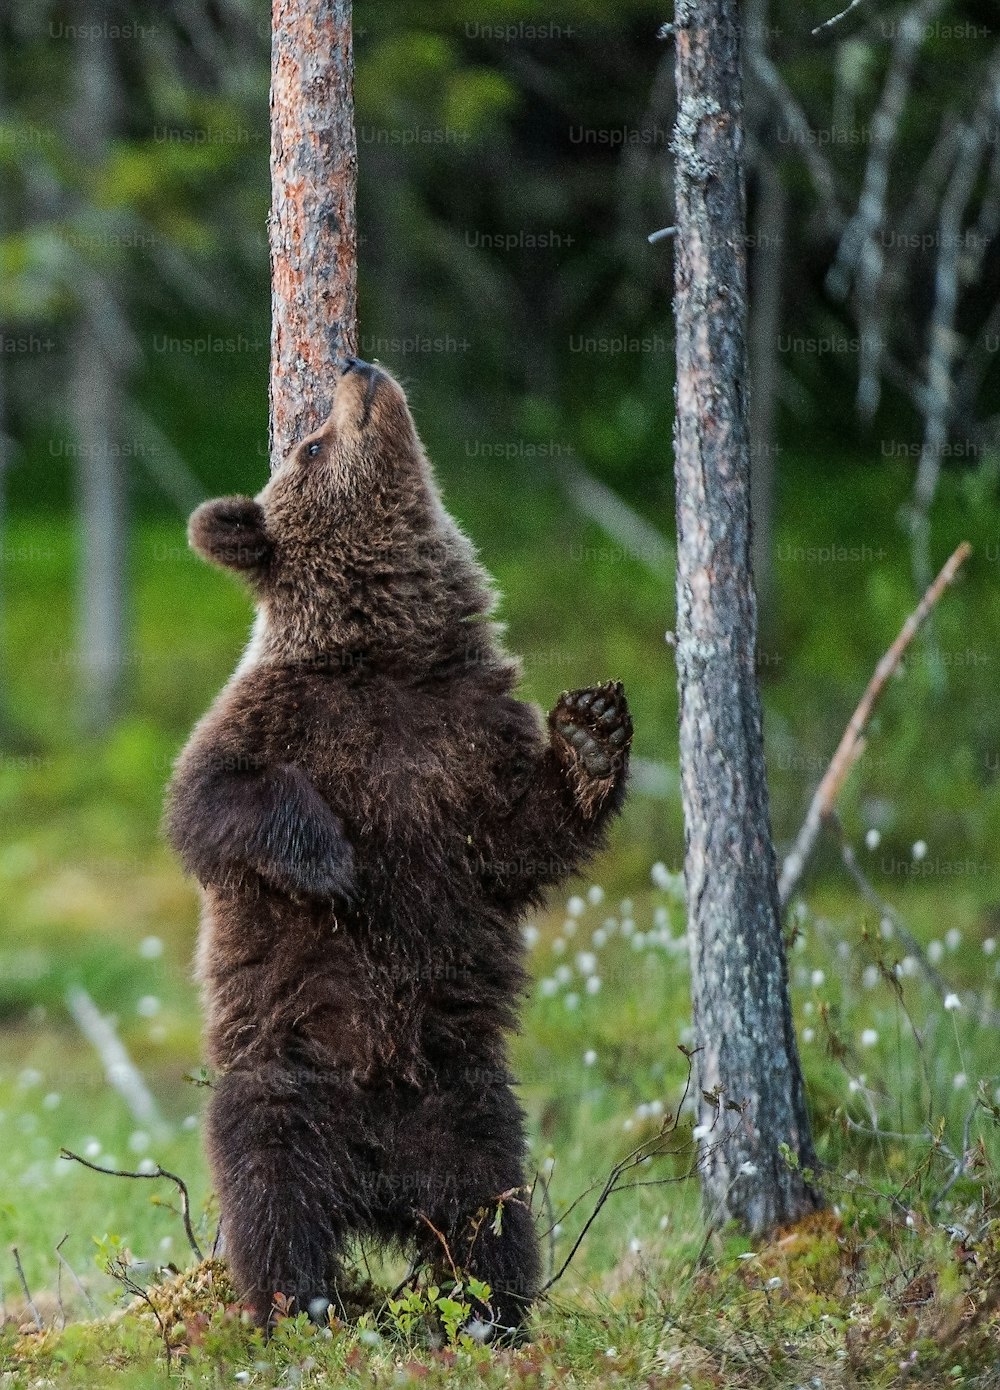 Cachorro de oso pardo de pie sobre sus patas traseras junto a un árbol en el bosque de verano. Nombre científico: Ursus Arctos (Oso Pardo). Fondo natural verde. Hábitat natural, temporada de verano.